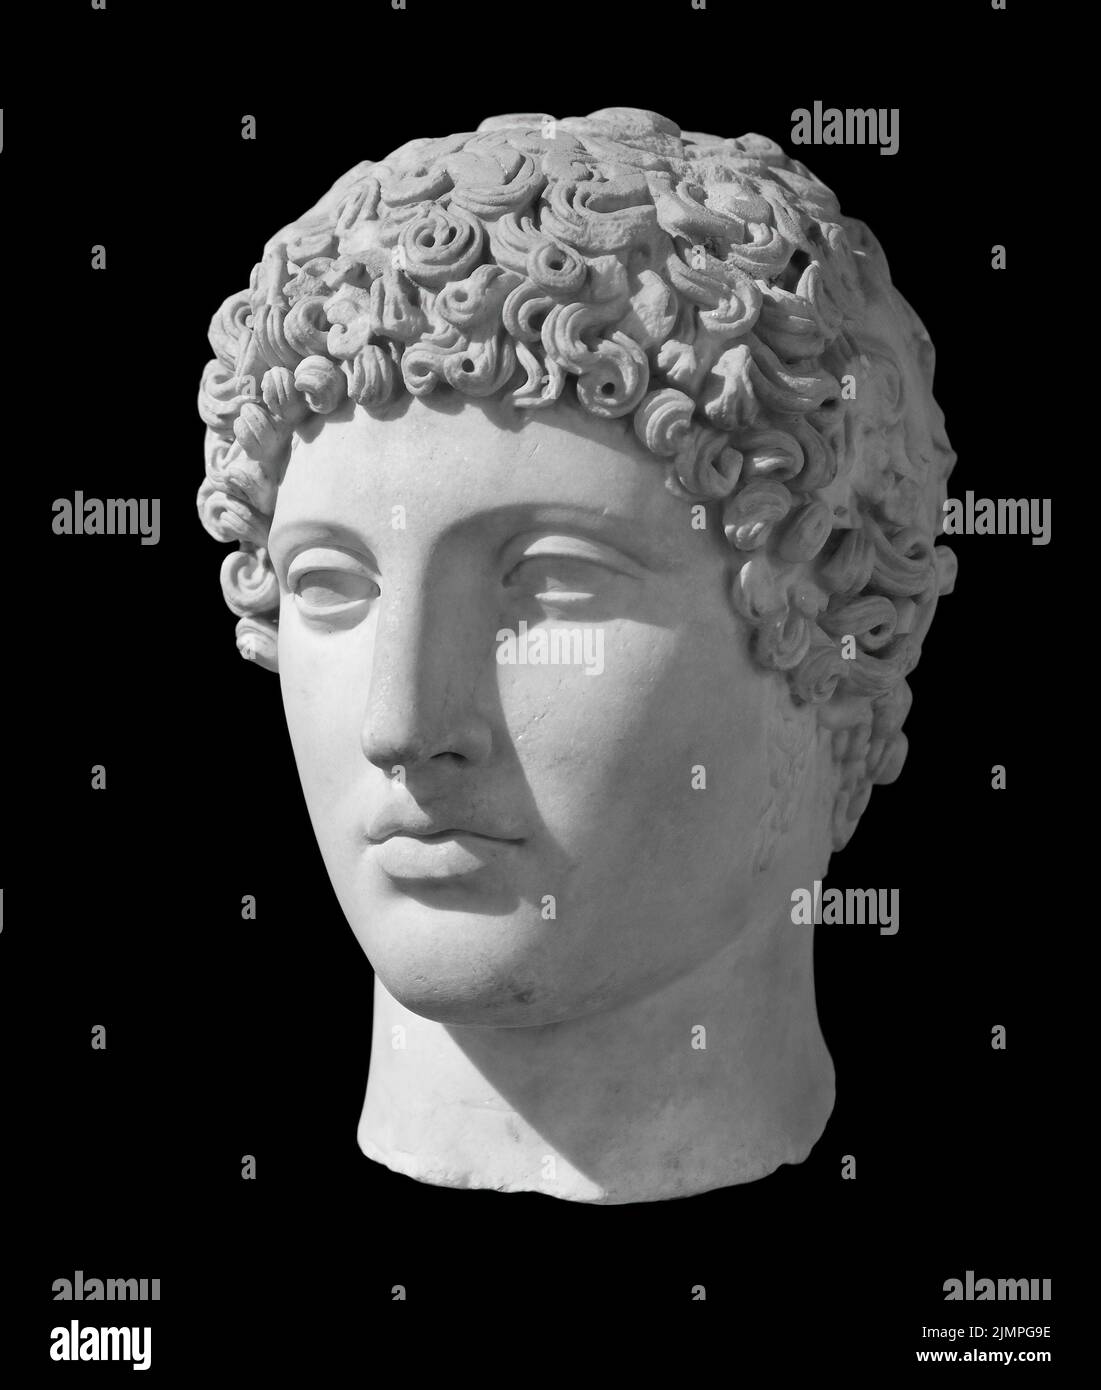 Alte Statue des antiken gottes des Handels, Kaufleute und Reisende Hermes - Merkur. Kopf Skulptur isoliert auf schwarzem Hintergrund Stockfoto